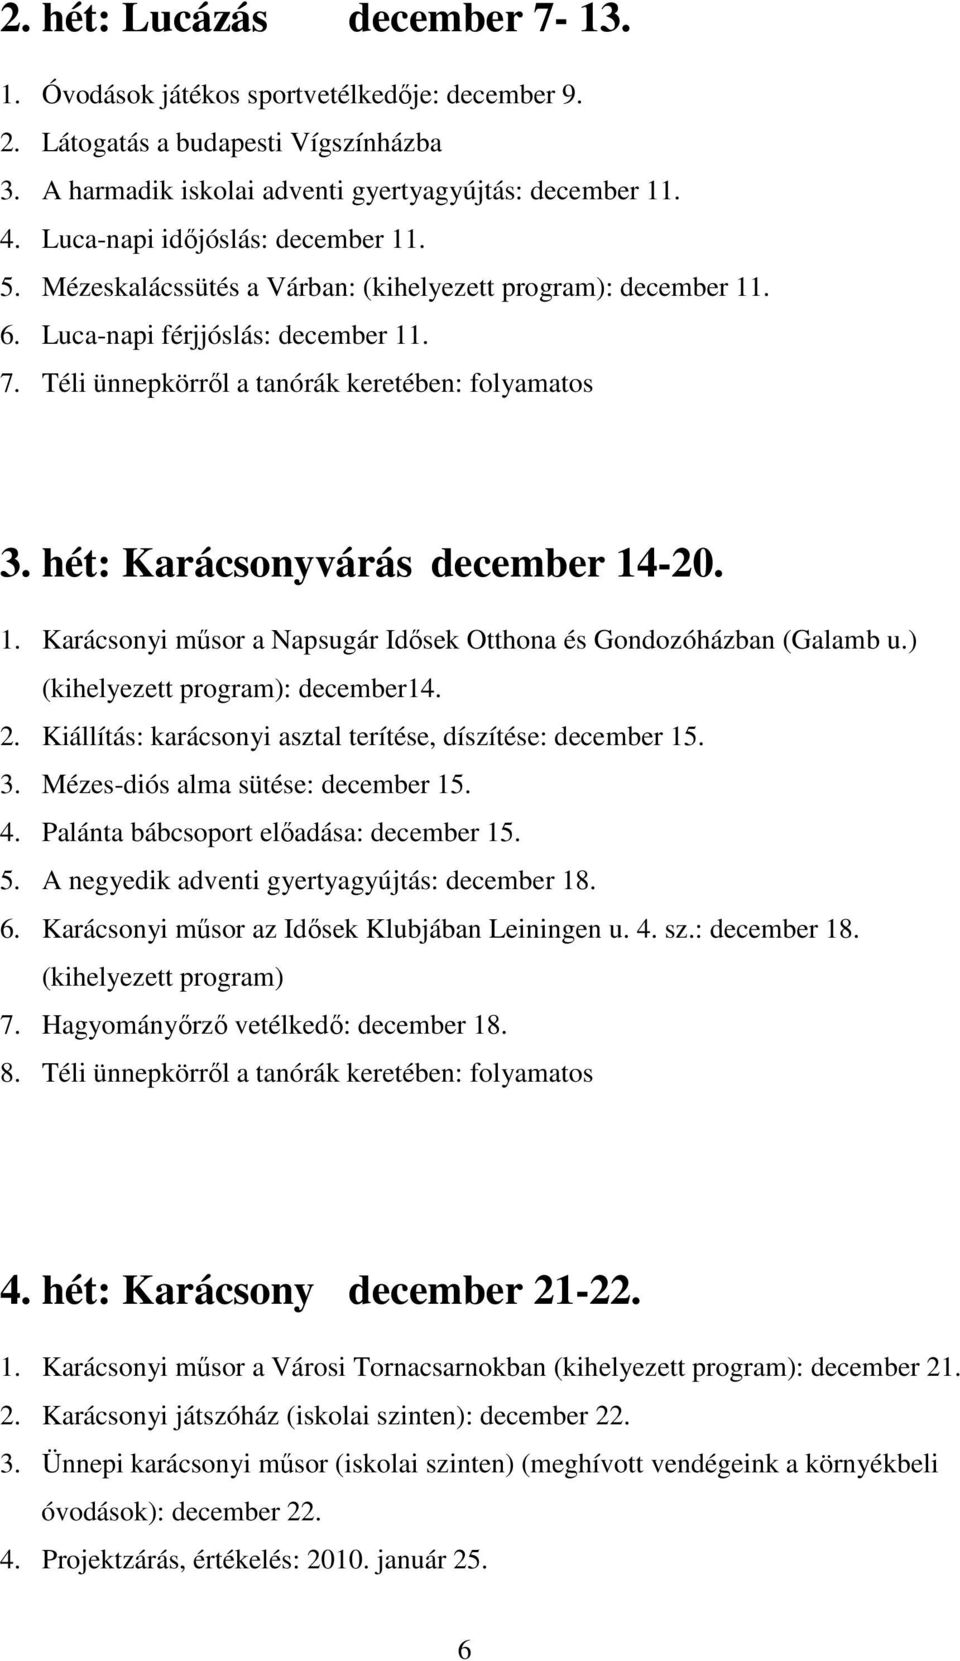 hét: Karácsonyvárás december 14-20. 1. Karácsonyi mősor a Napsugár Idısek Otthona és Gondozóházban (Galamb u.) (kihelyezett program): december14. 2.